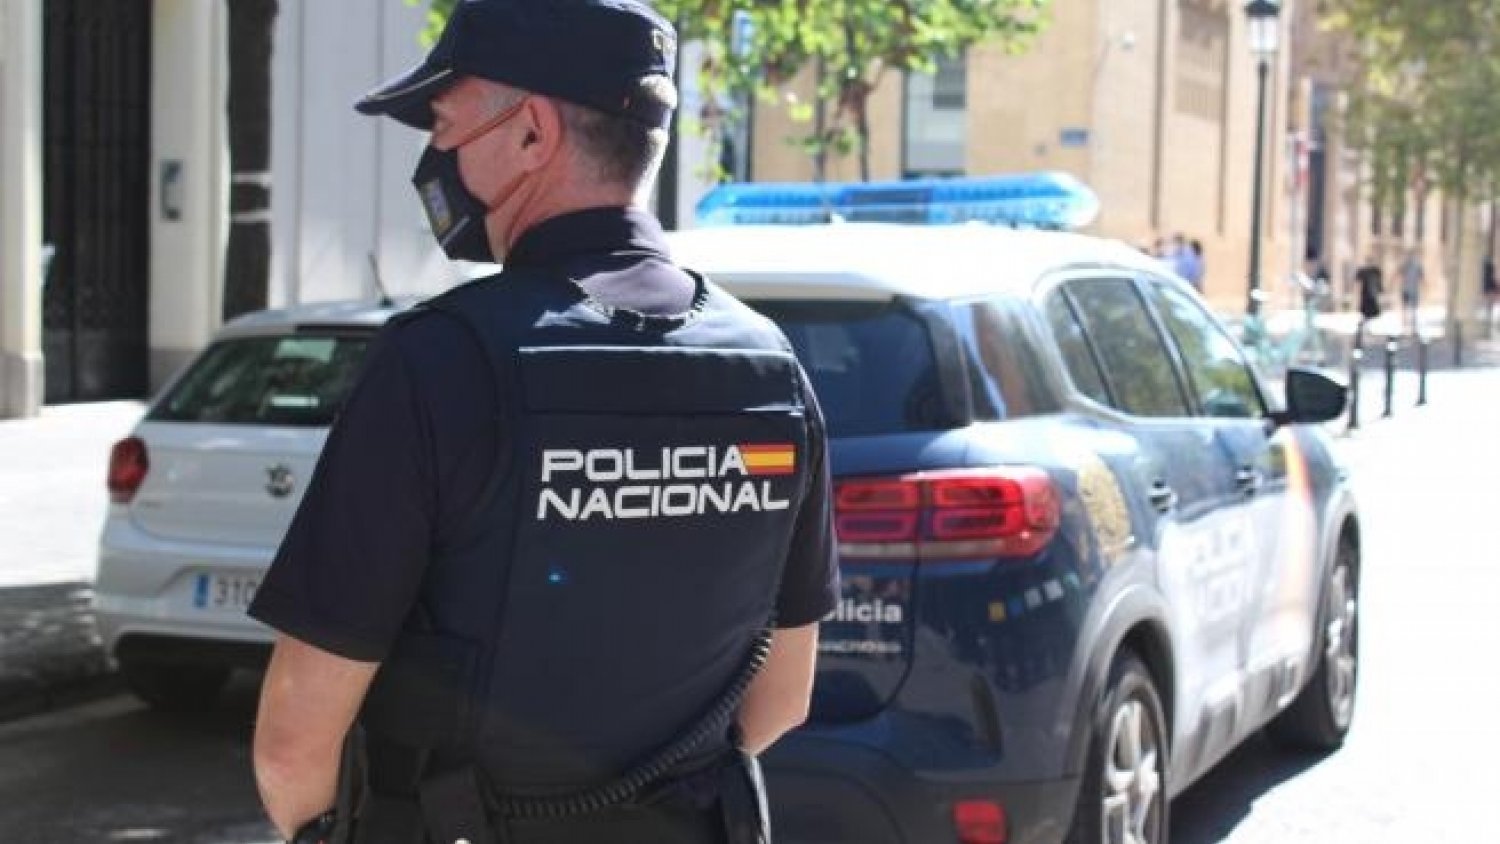 Intervenidos 200 kilogramos de marihuana a un grupo criminal desarticulado en Málaga